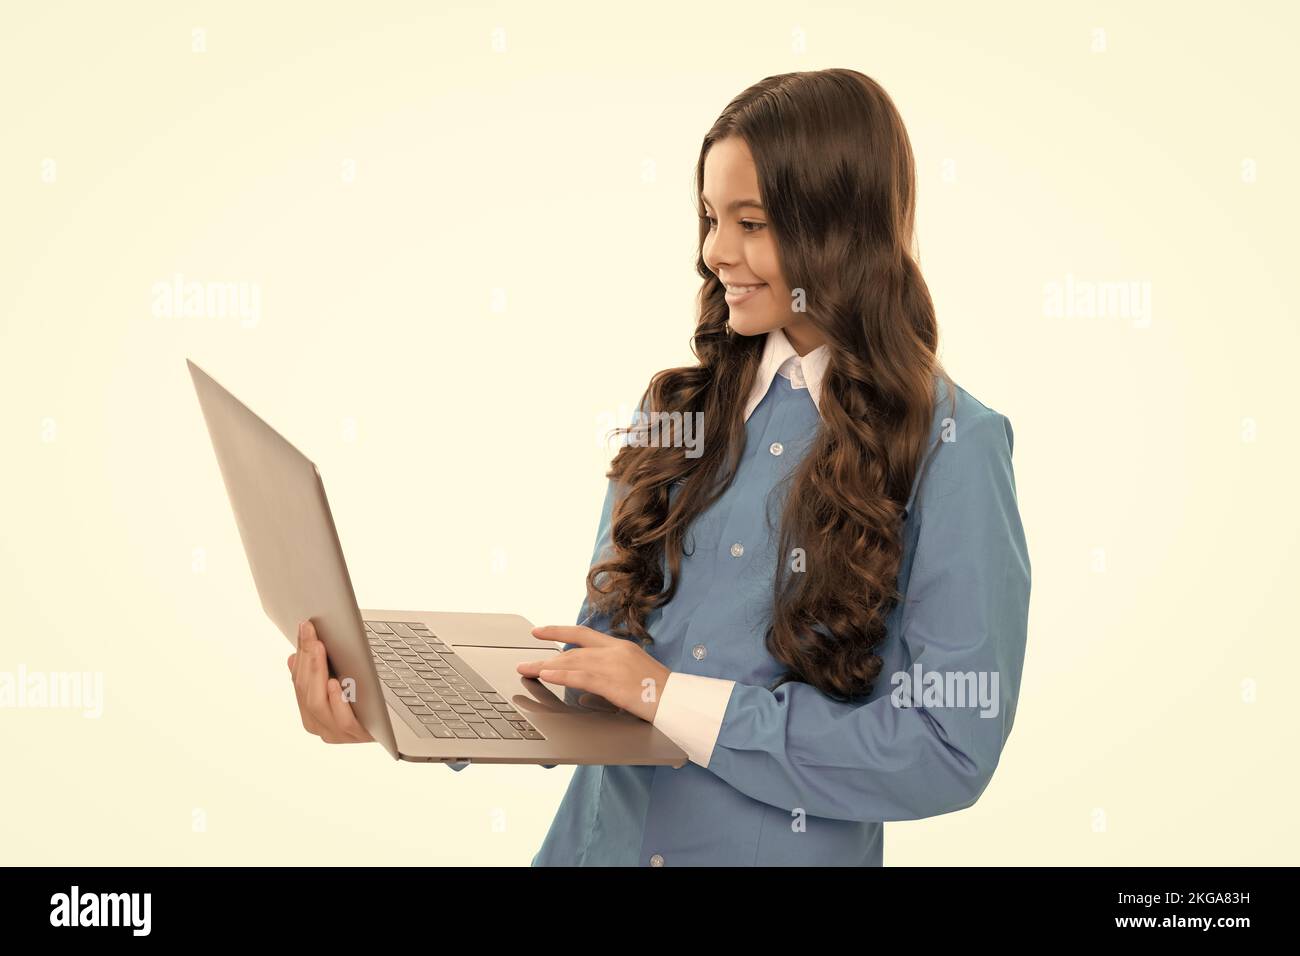 Eingabe Schule Blog auf Computer. Kind auf Video-Lektion. Teen Mädchen verwenden Laptop zum Bloggen. Stockfoto